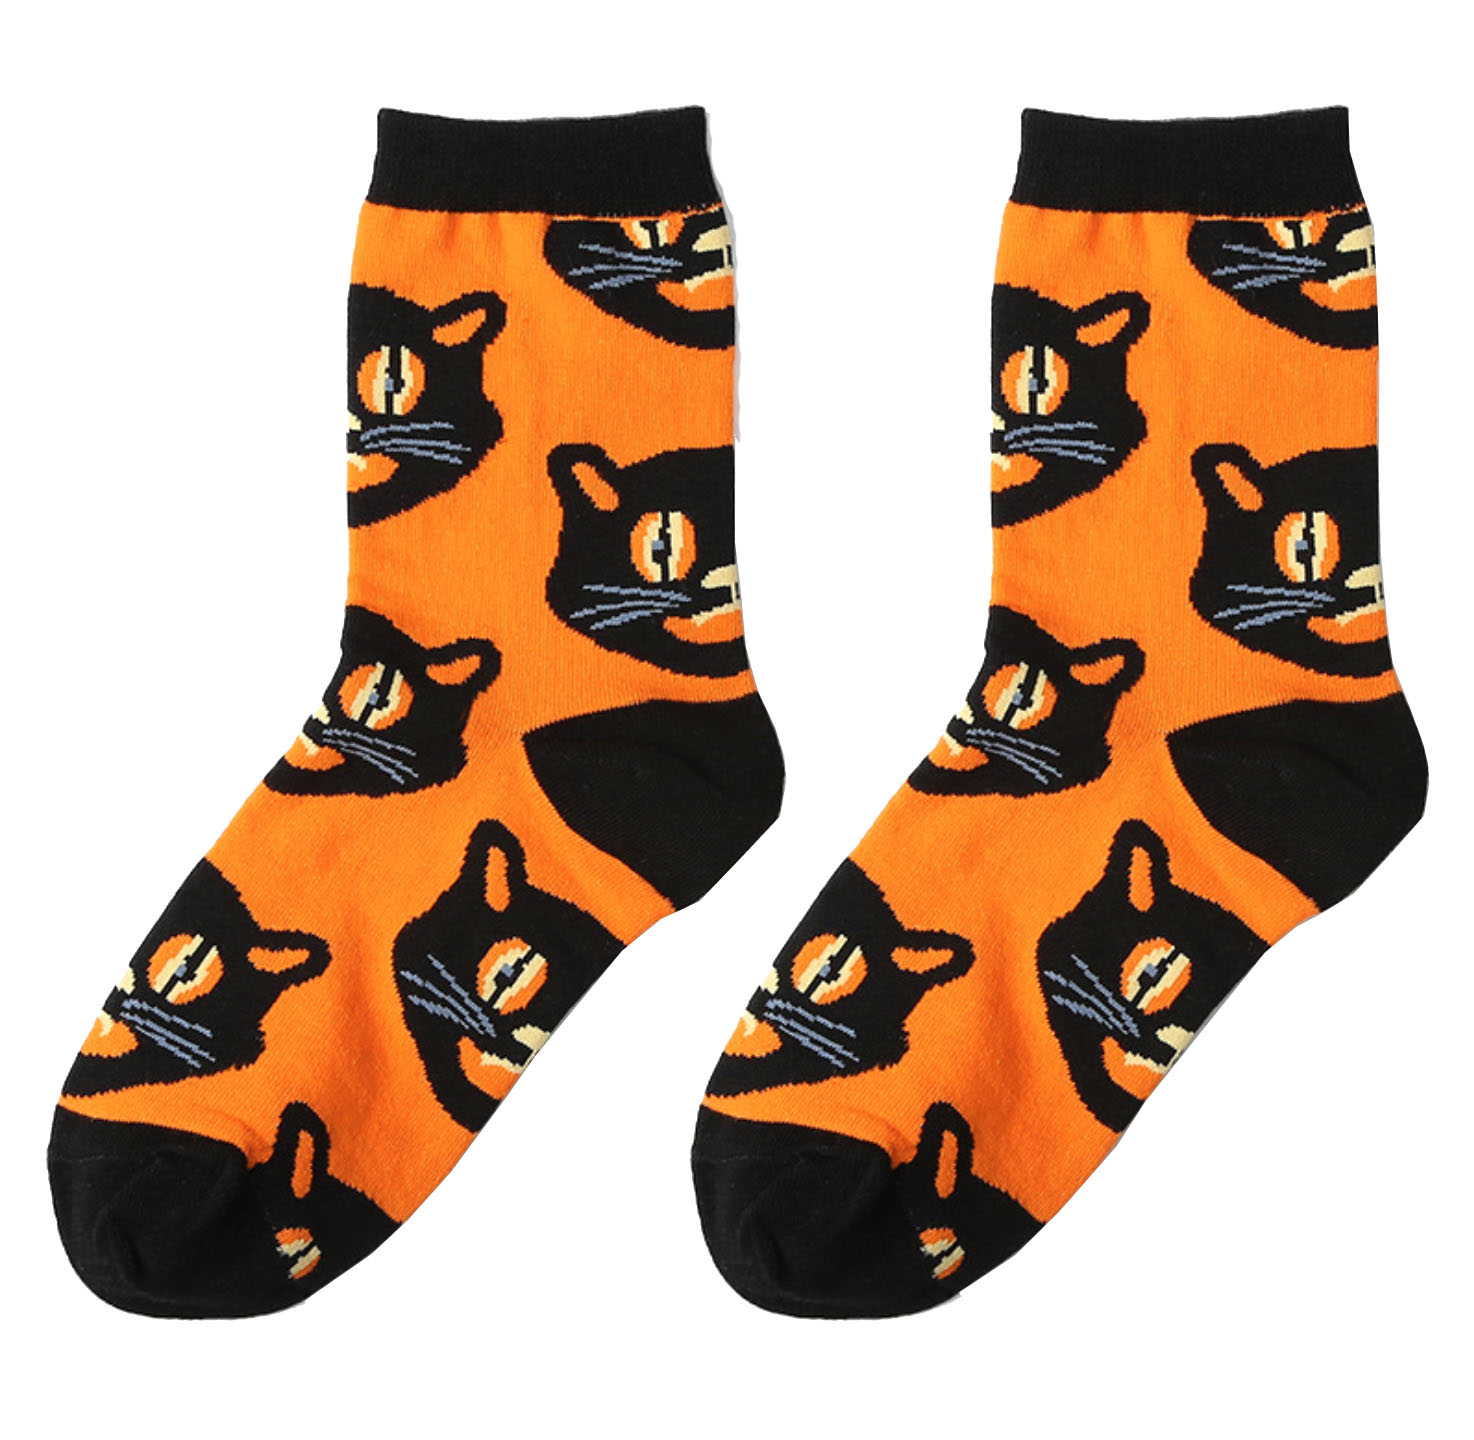 Носки оранжевые с черными кошками описание: Состав - Хлопок 50%, полиэстер 30%, нейлон 17%, спандекс 3% , Размер - 37-42, Цвет - Оранжевый, черный, Страна производства - Китай;